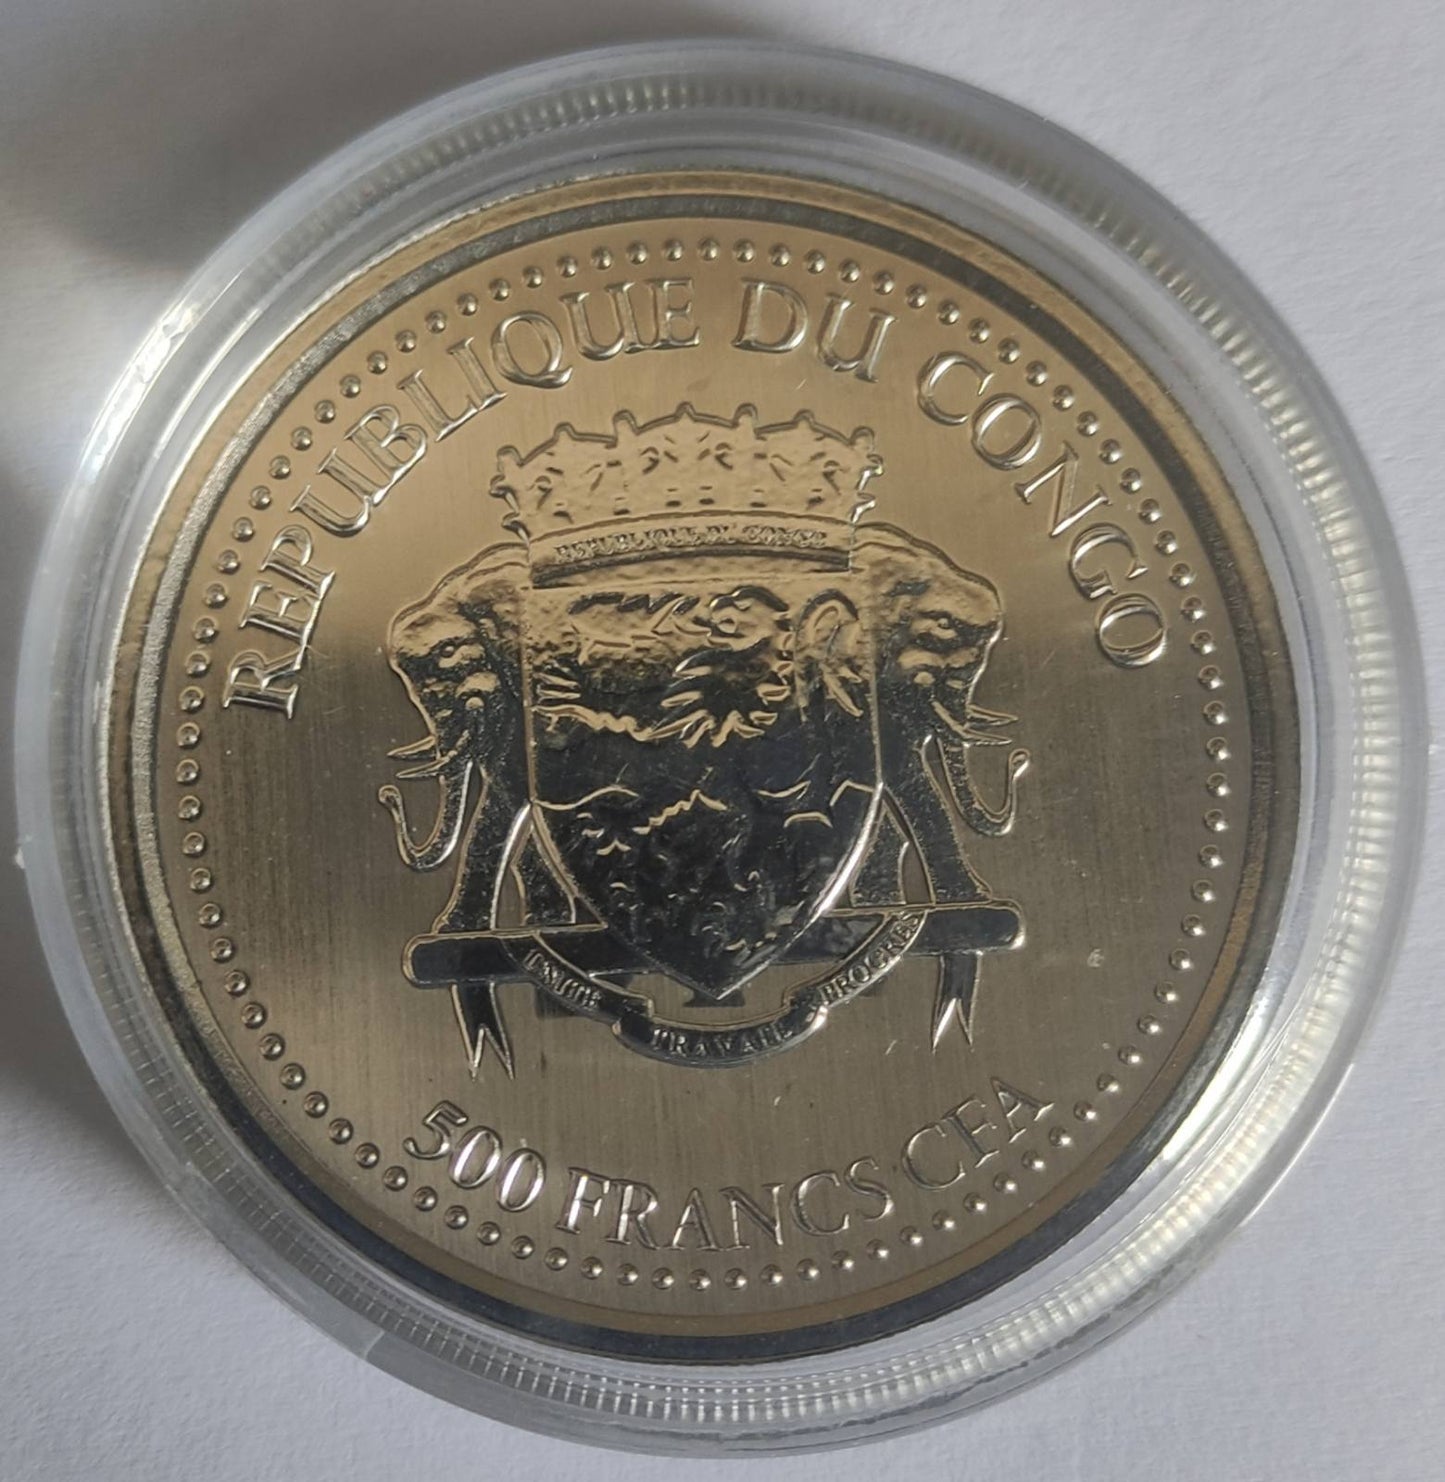 2021 Republic of Congo Silverback Gorilla 1 oz Prooflike Silver Coin in Capsule